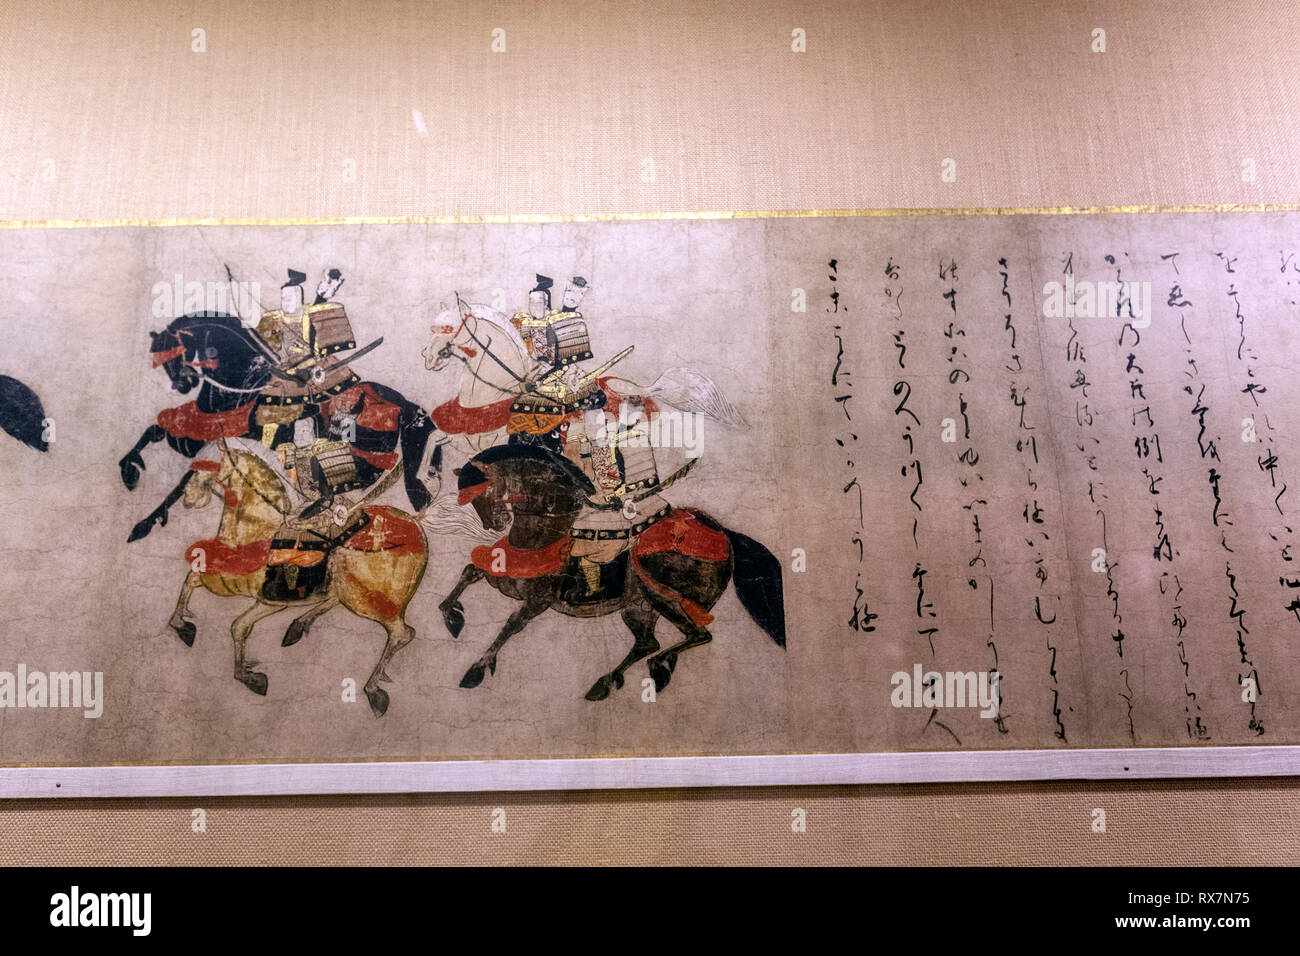 Scène de 'channel' (bouées) Miotsukushi, chapitre 14 du Dit du Genji, le Metropolitan Museum of Art, Manhattan, New York USA Banque D'Images